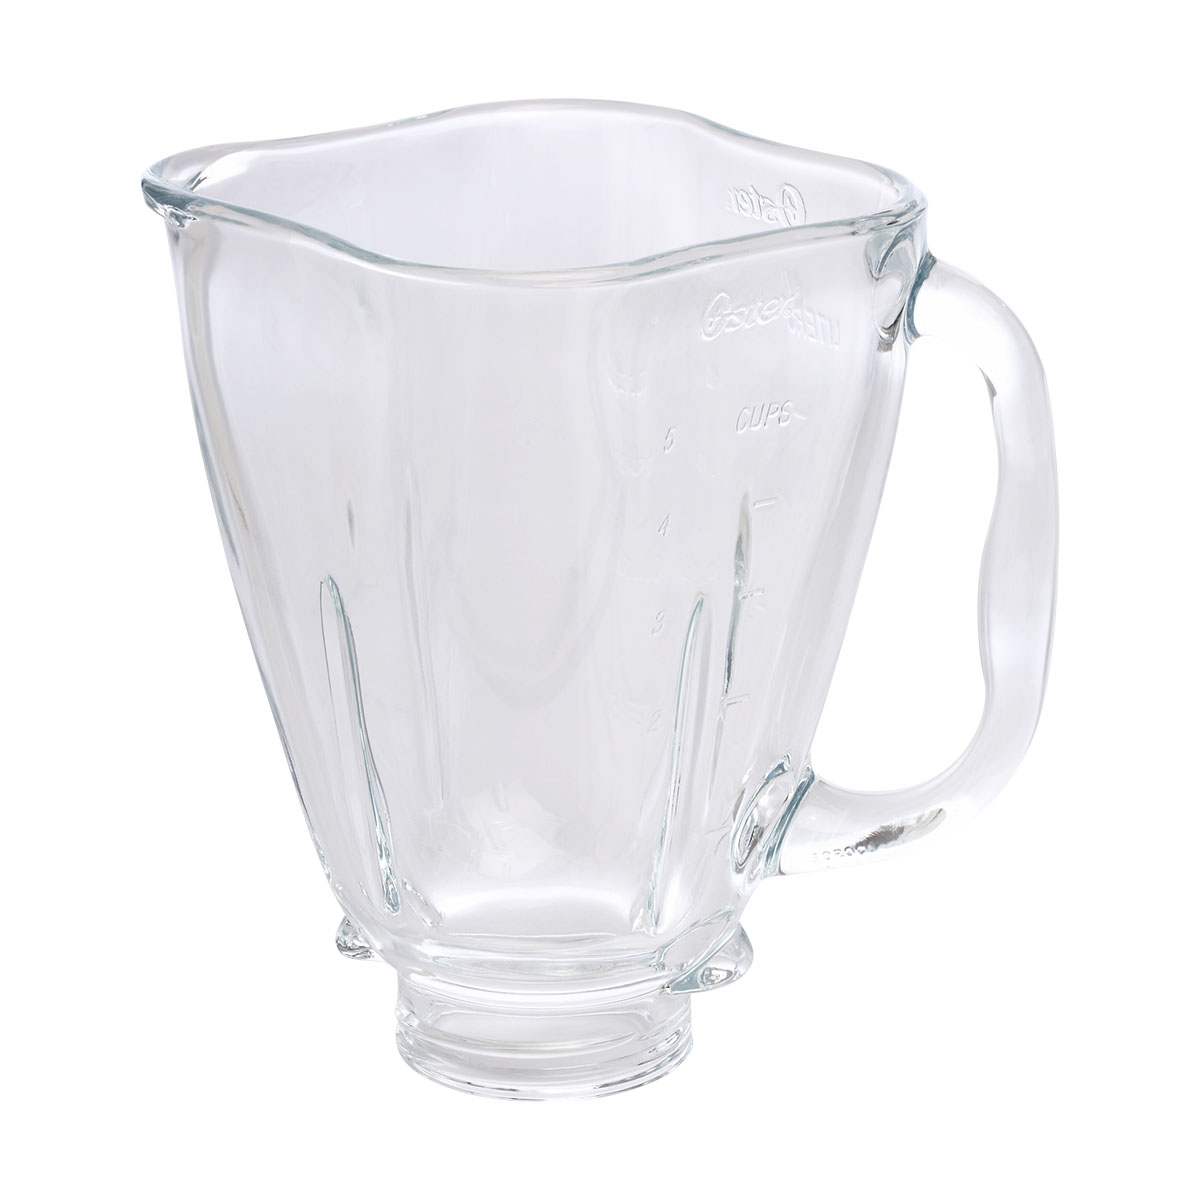  Clover leaf shaped glass blender jar, fits Oster blenders. :  Home & Kitchen